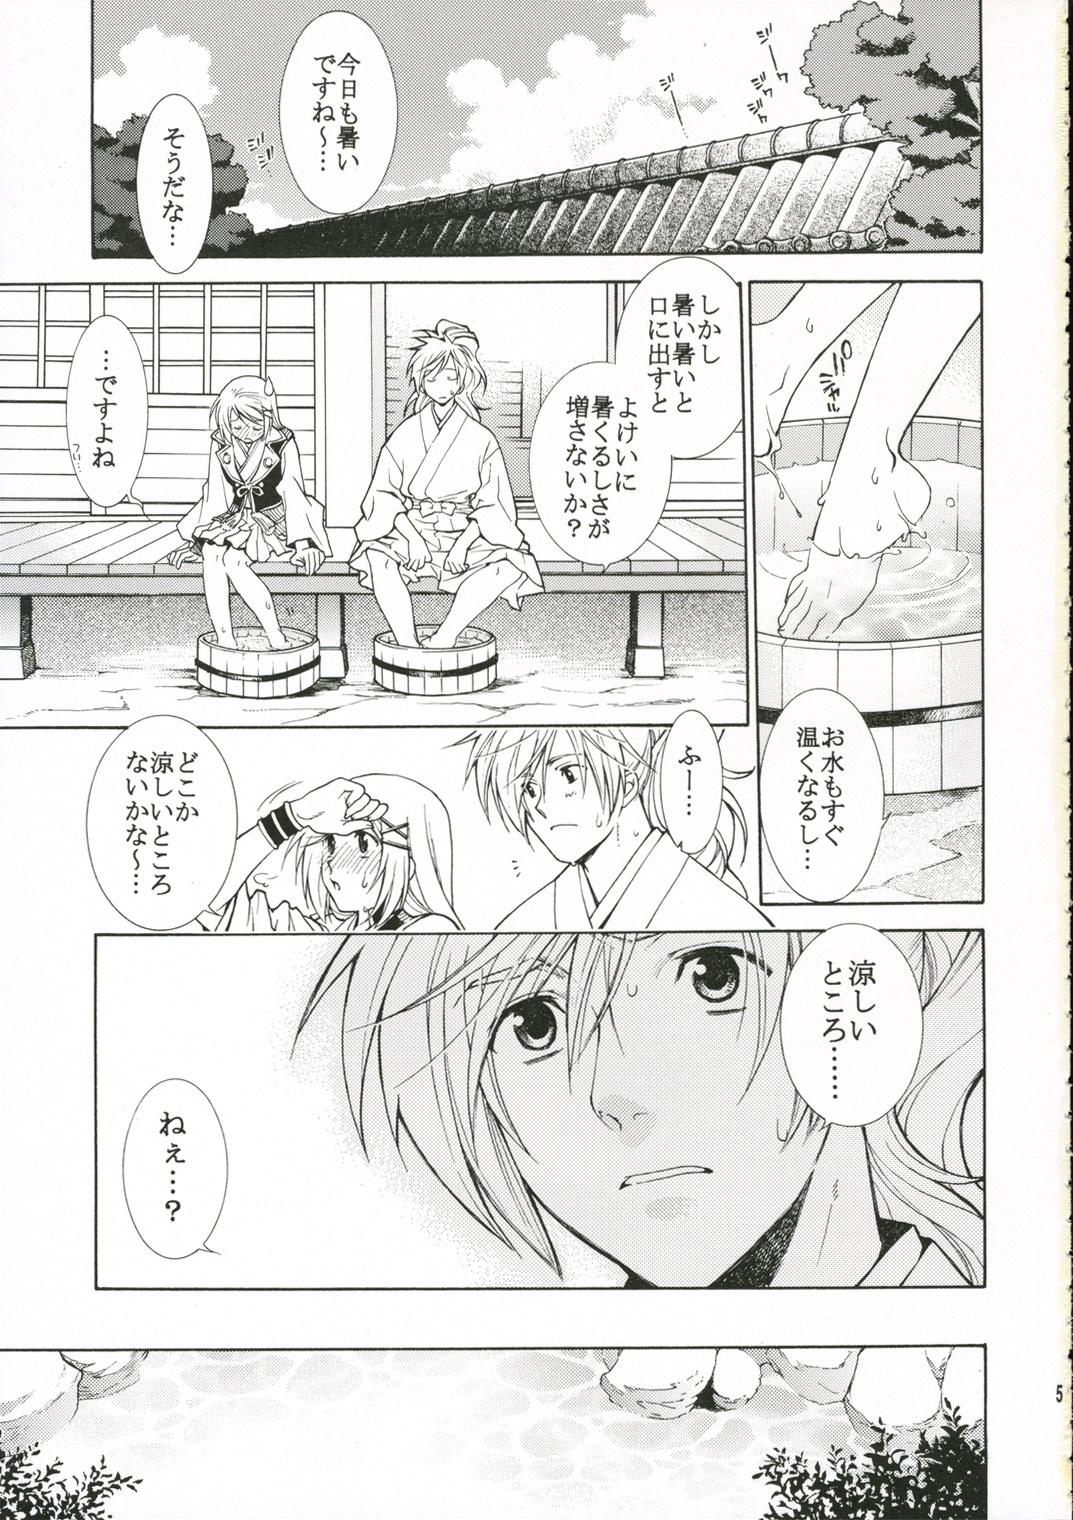 Tugging Hitoyasumi. - Harukanaru toki no naka de Playing - Page 4